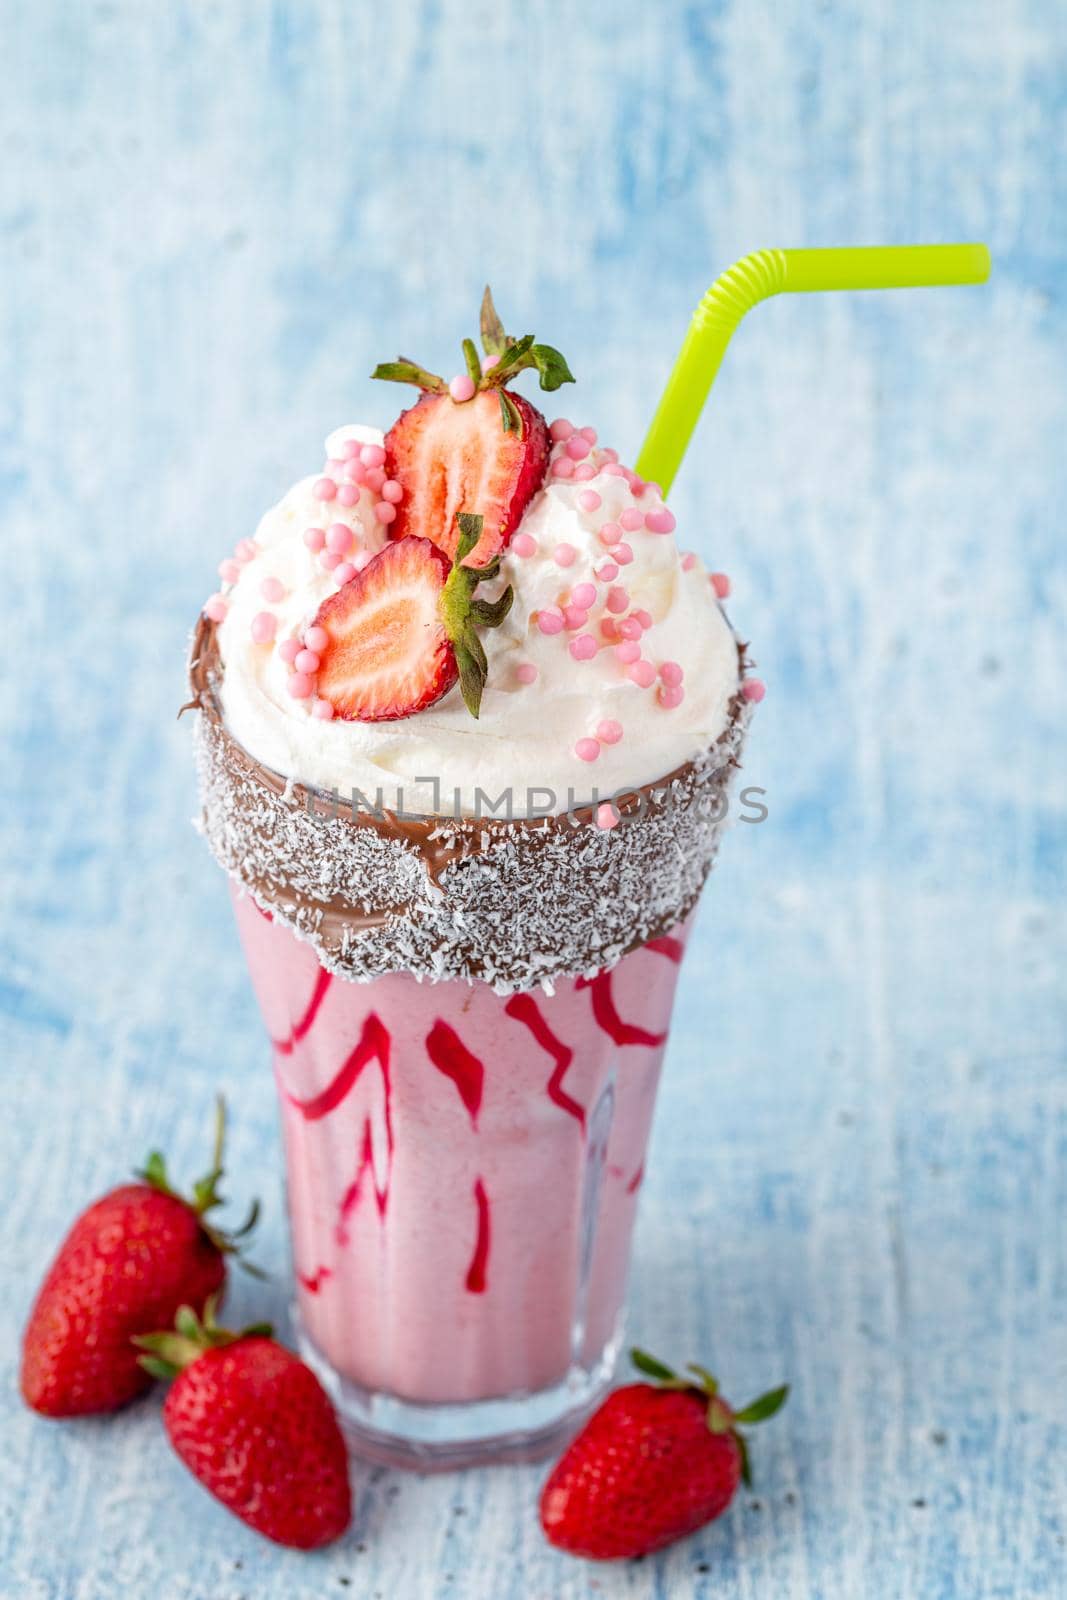 Refreshing strawberry milkshake on blue stone background